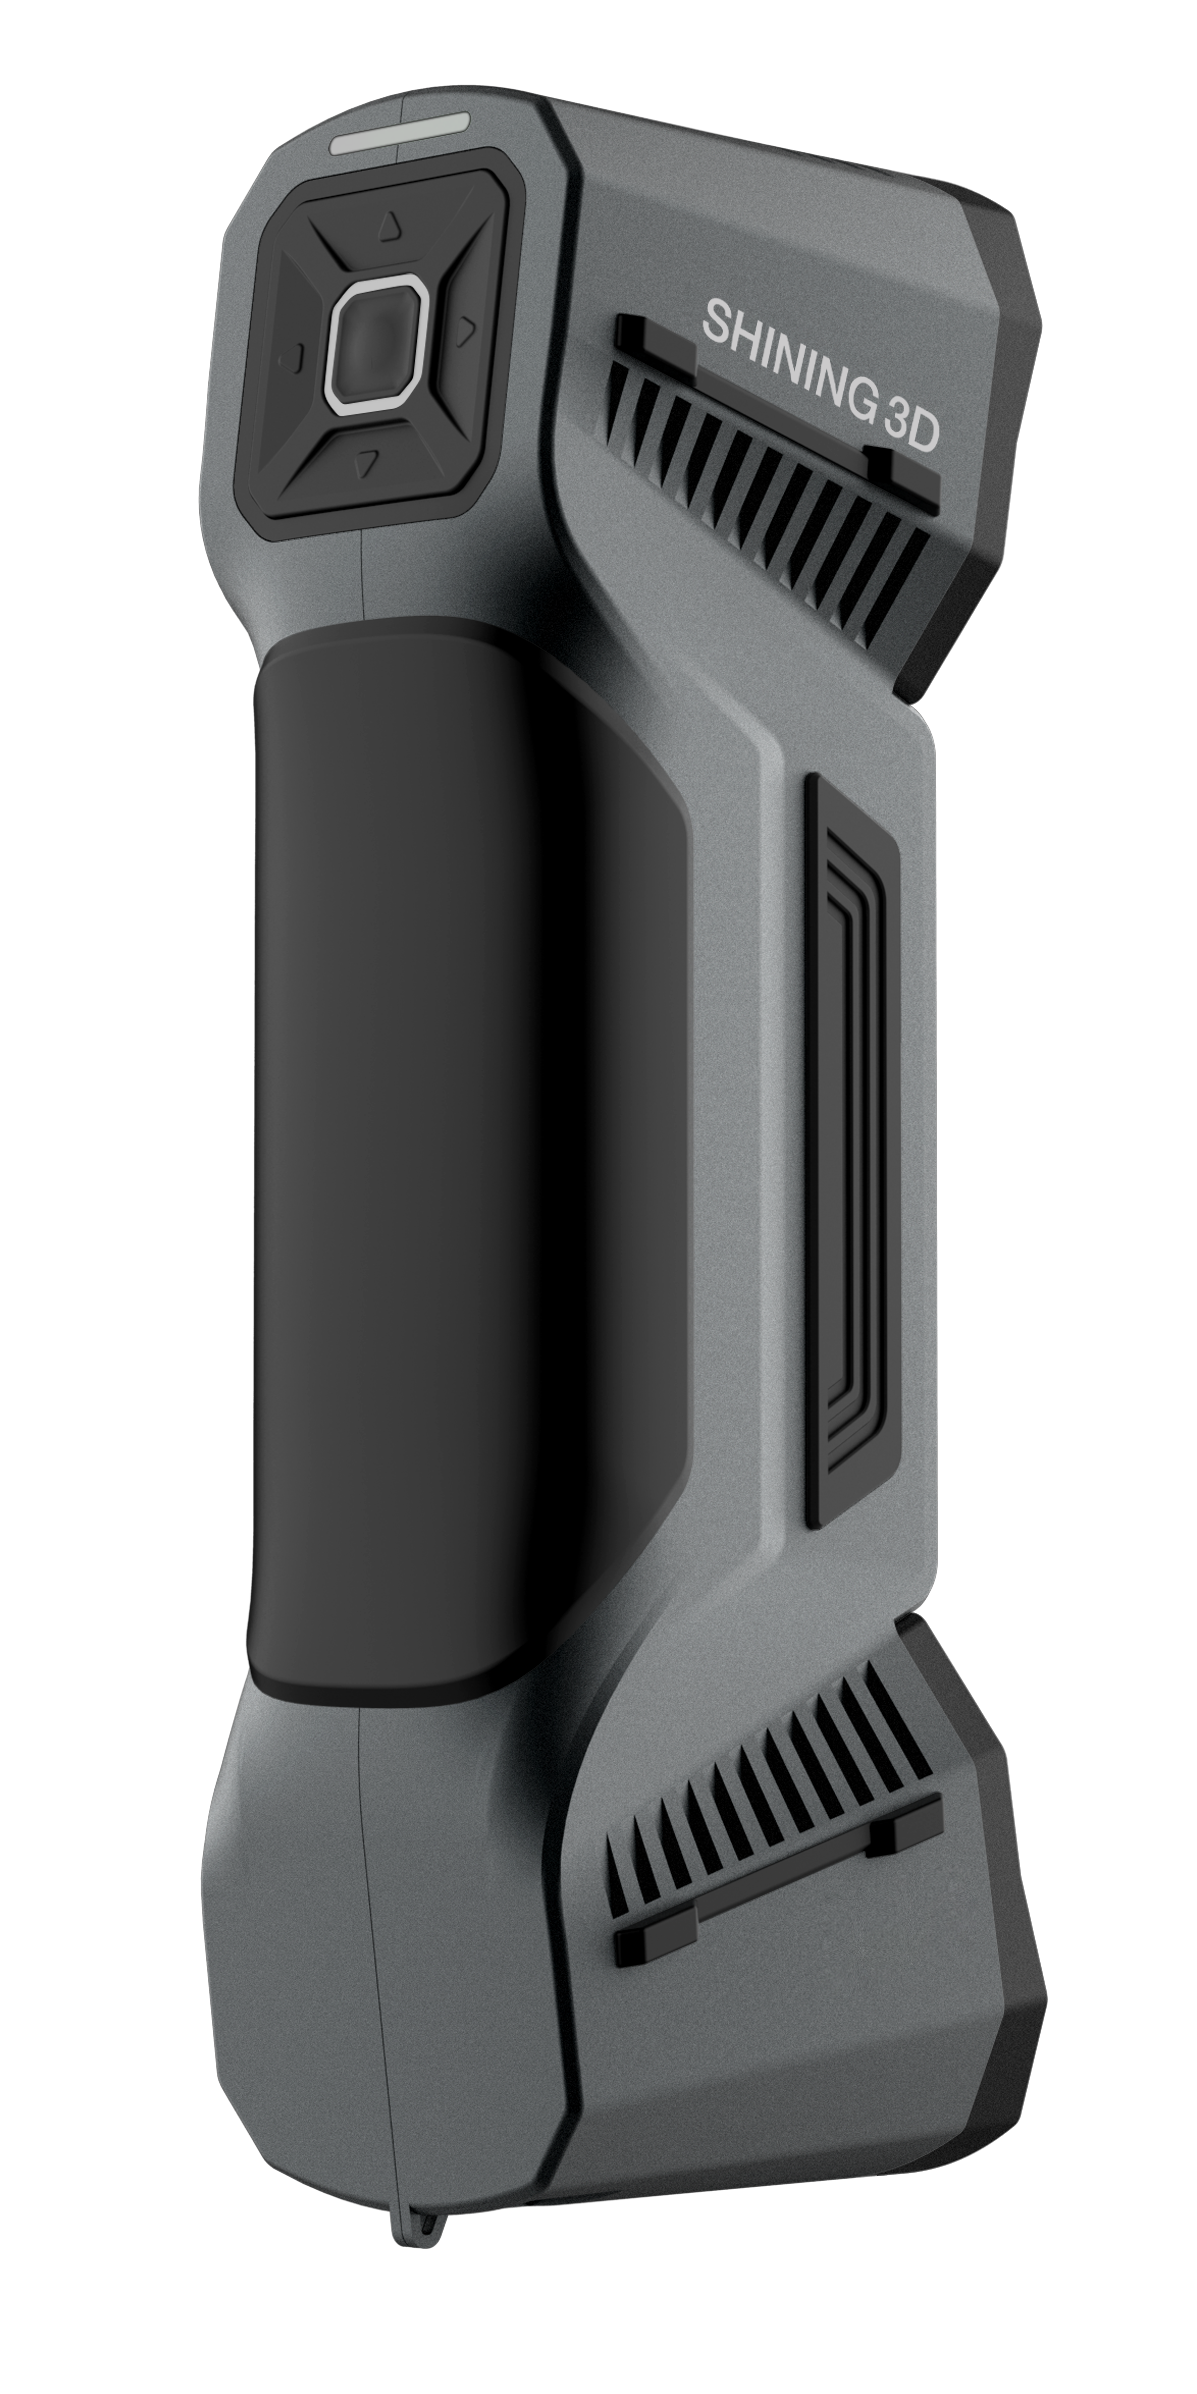 Freescan Combo Blue Laser & Infrared Handheld 3D Scanner